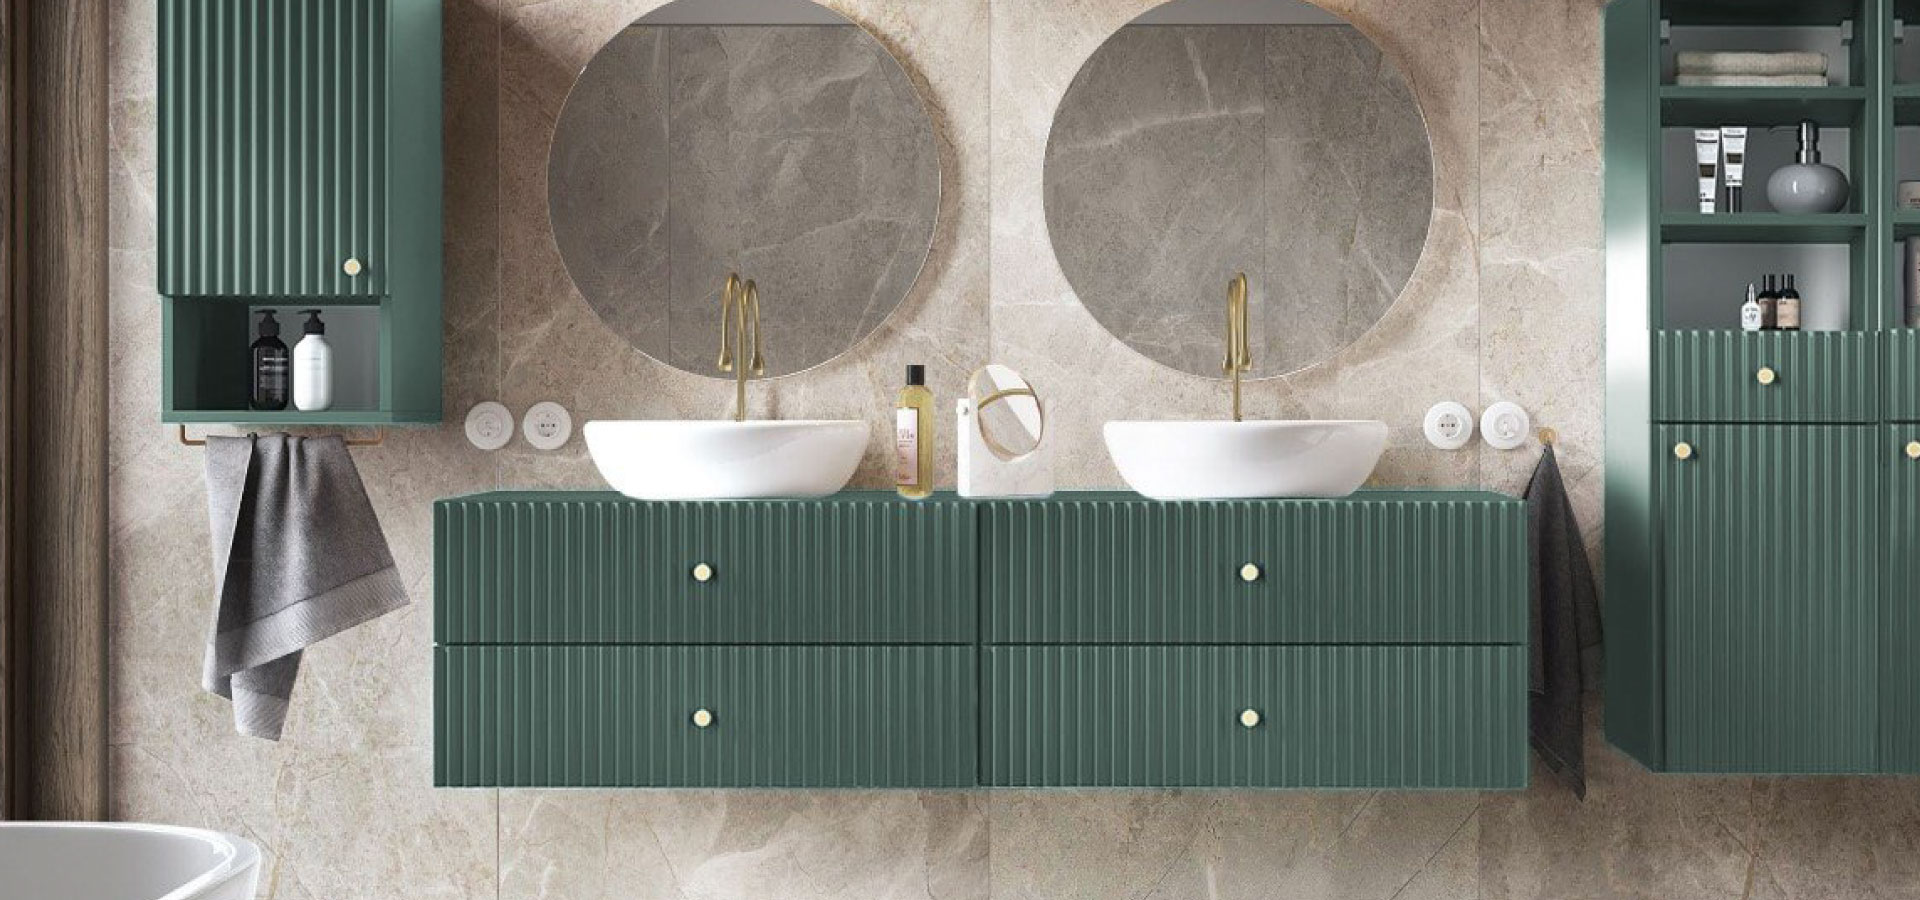 Nowoczesna łazienka utrzymana w beżu i zieleni, z wiszącymi szafkami w kolorze szałwiowym. Nad umywalkami dwa okrągłe lustra i złota armatura.